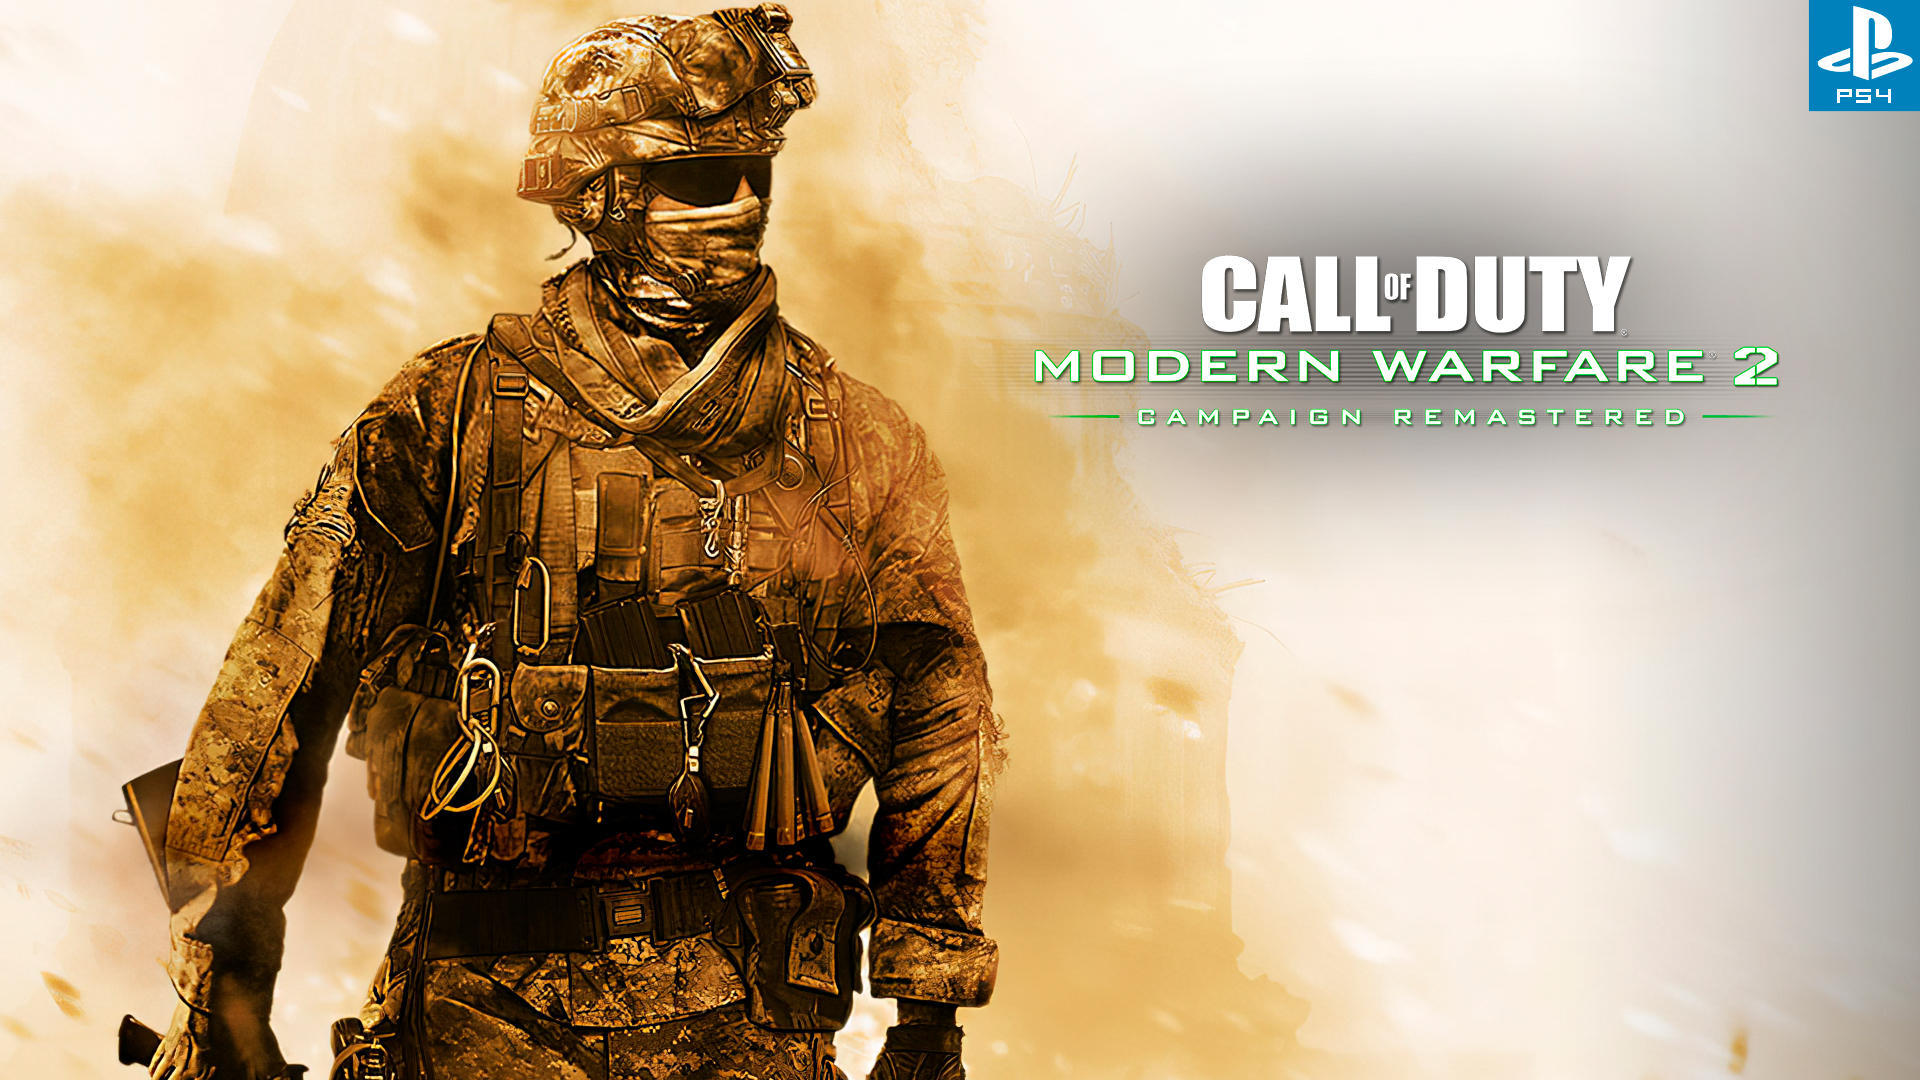 18+ Call of Duty: Modern Warfare 2 - 4 СЕРИЯ ЧУМОВОГО ШУТЕРА от первого лица, приятного просмотра!!!